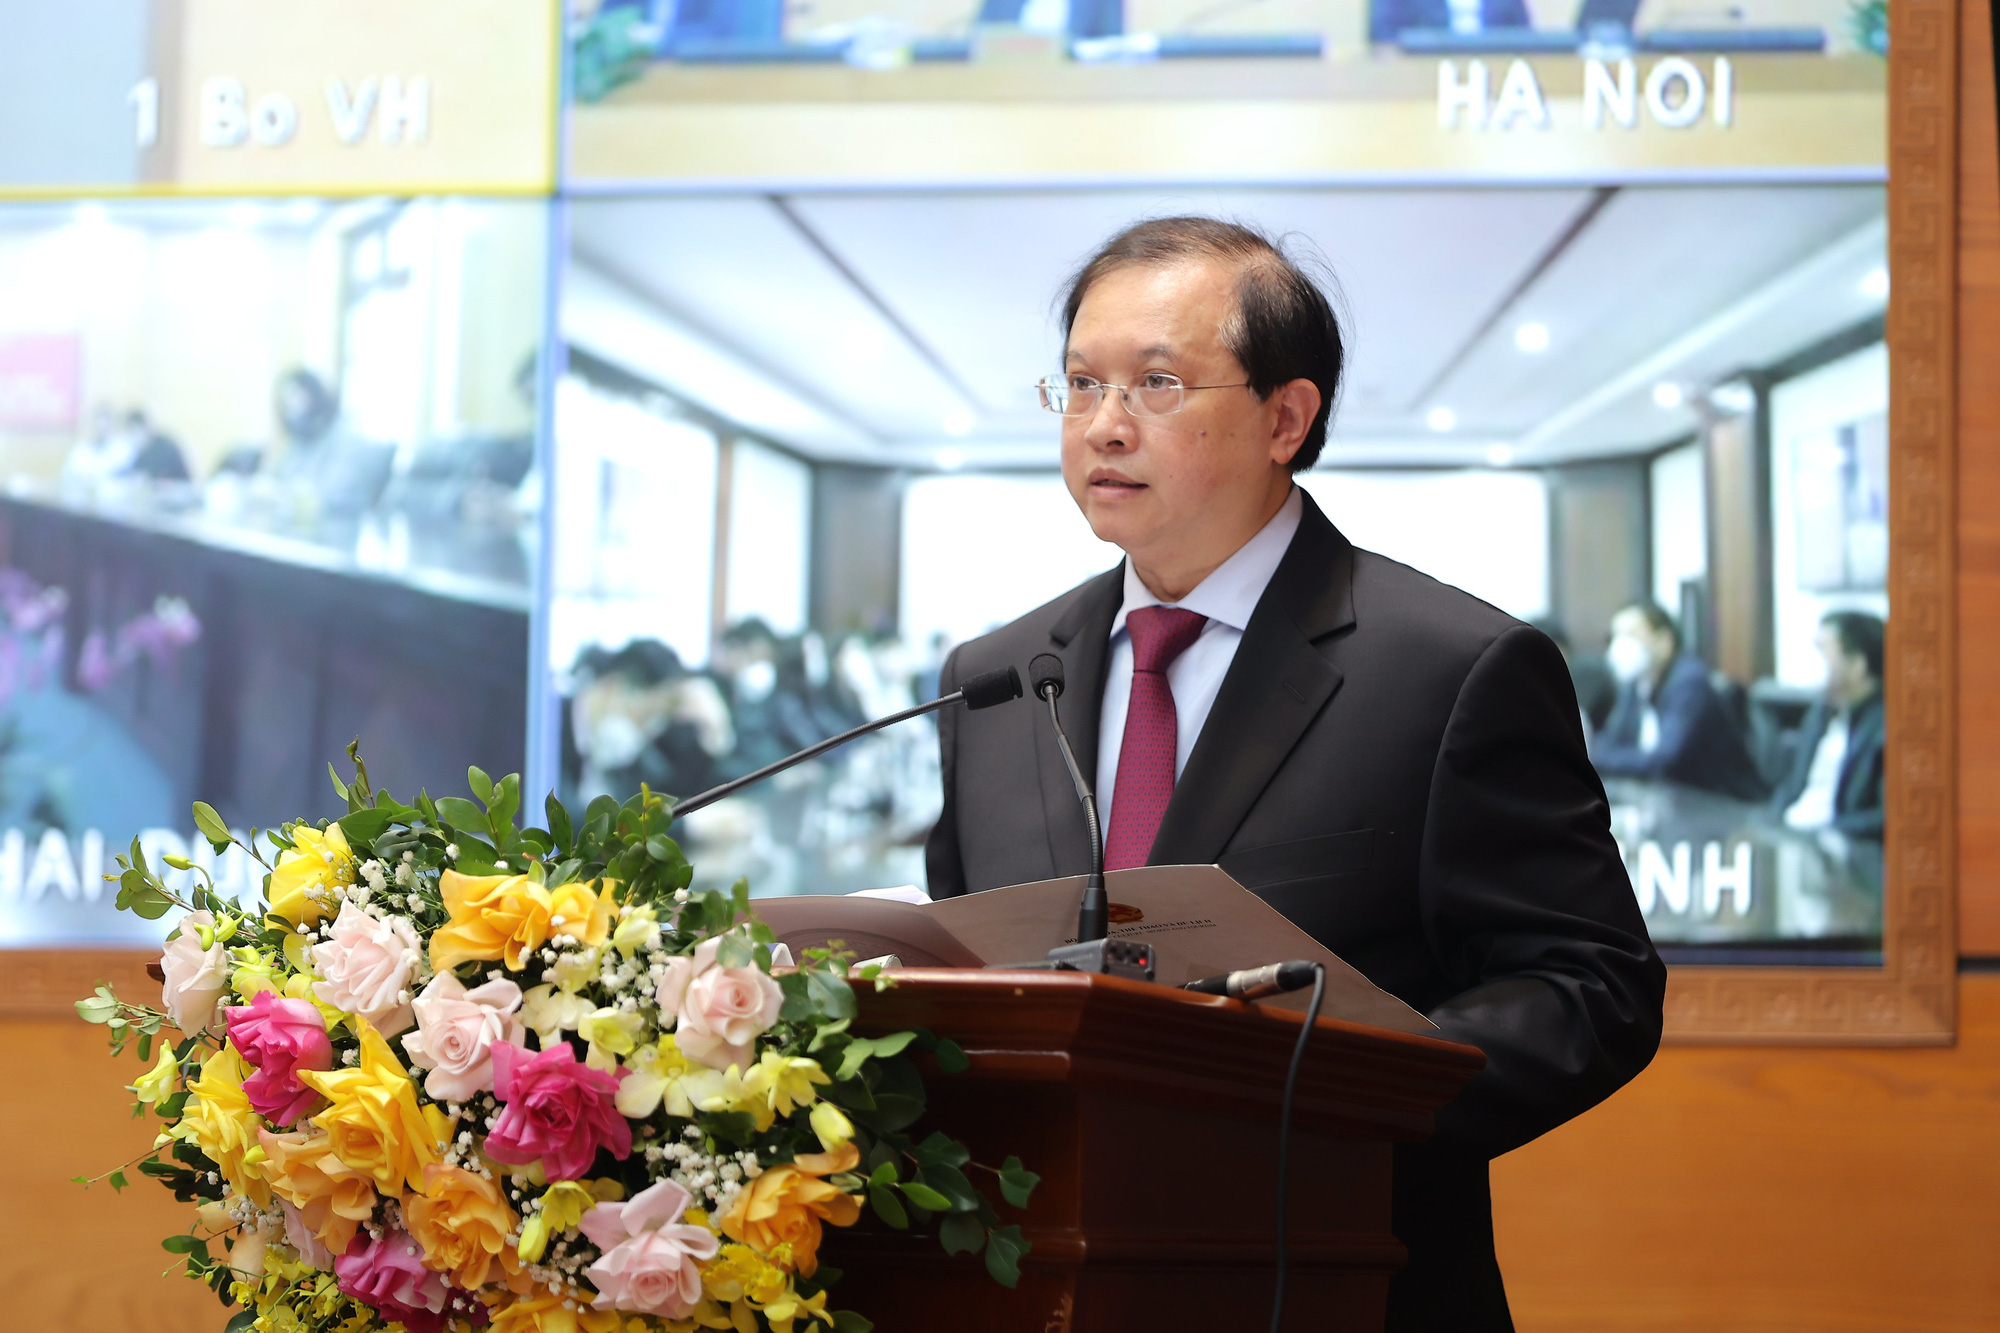 Phó Thủ tướng: “Phải tiếp tục phát huy được truyền thống văn hóa tốt đẹp của con người Việt Nam như lúc khó khăn, dịch bệnh” - Ảnh 2.